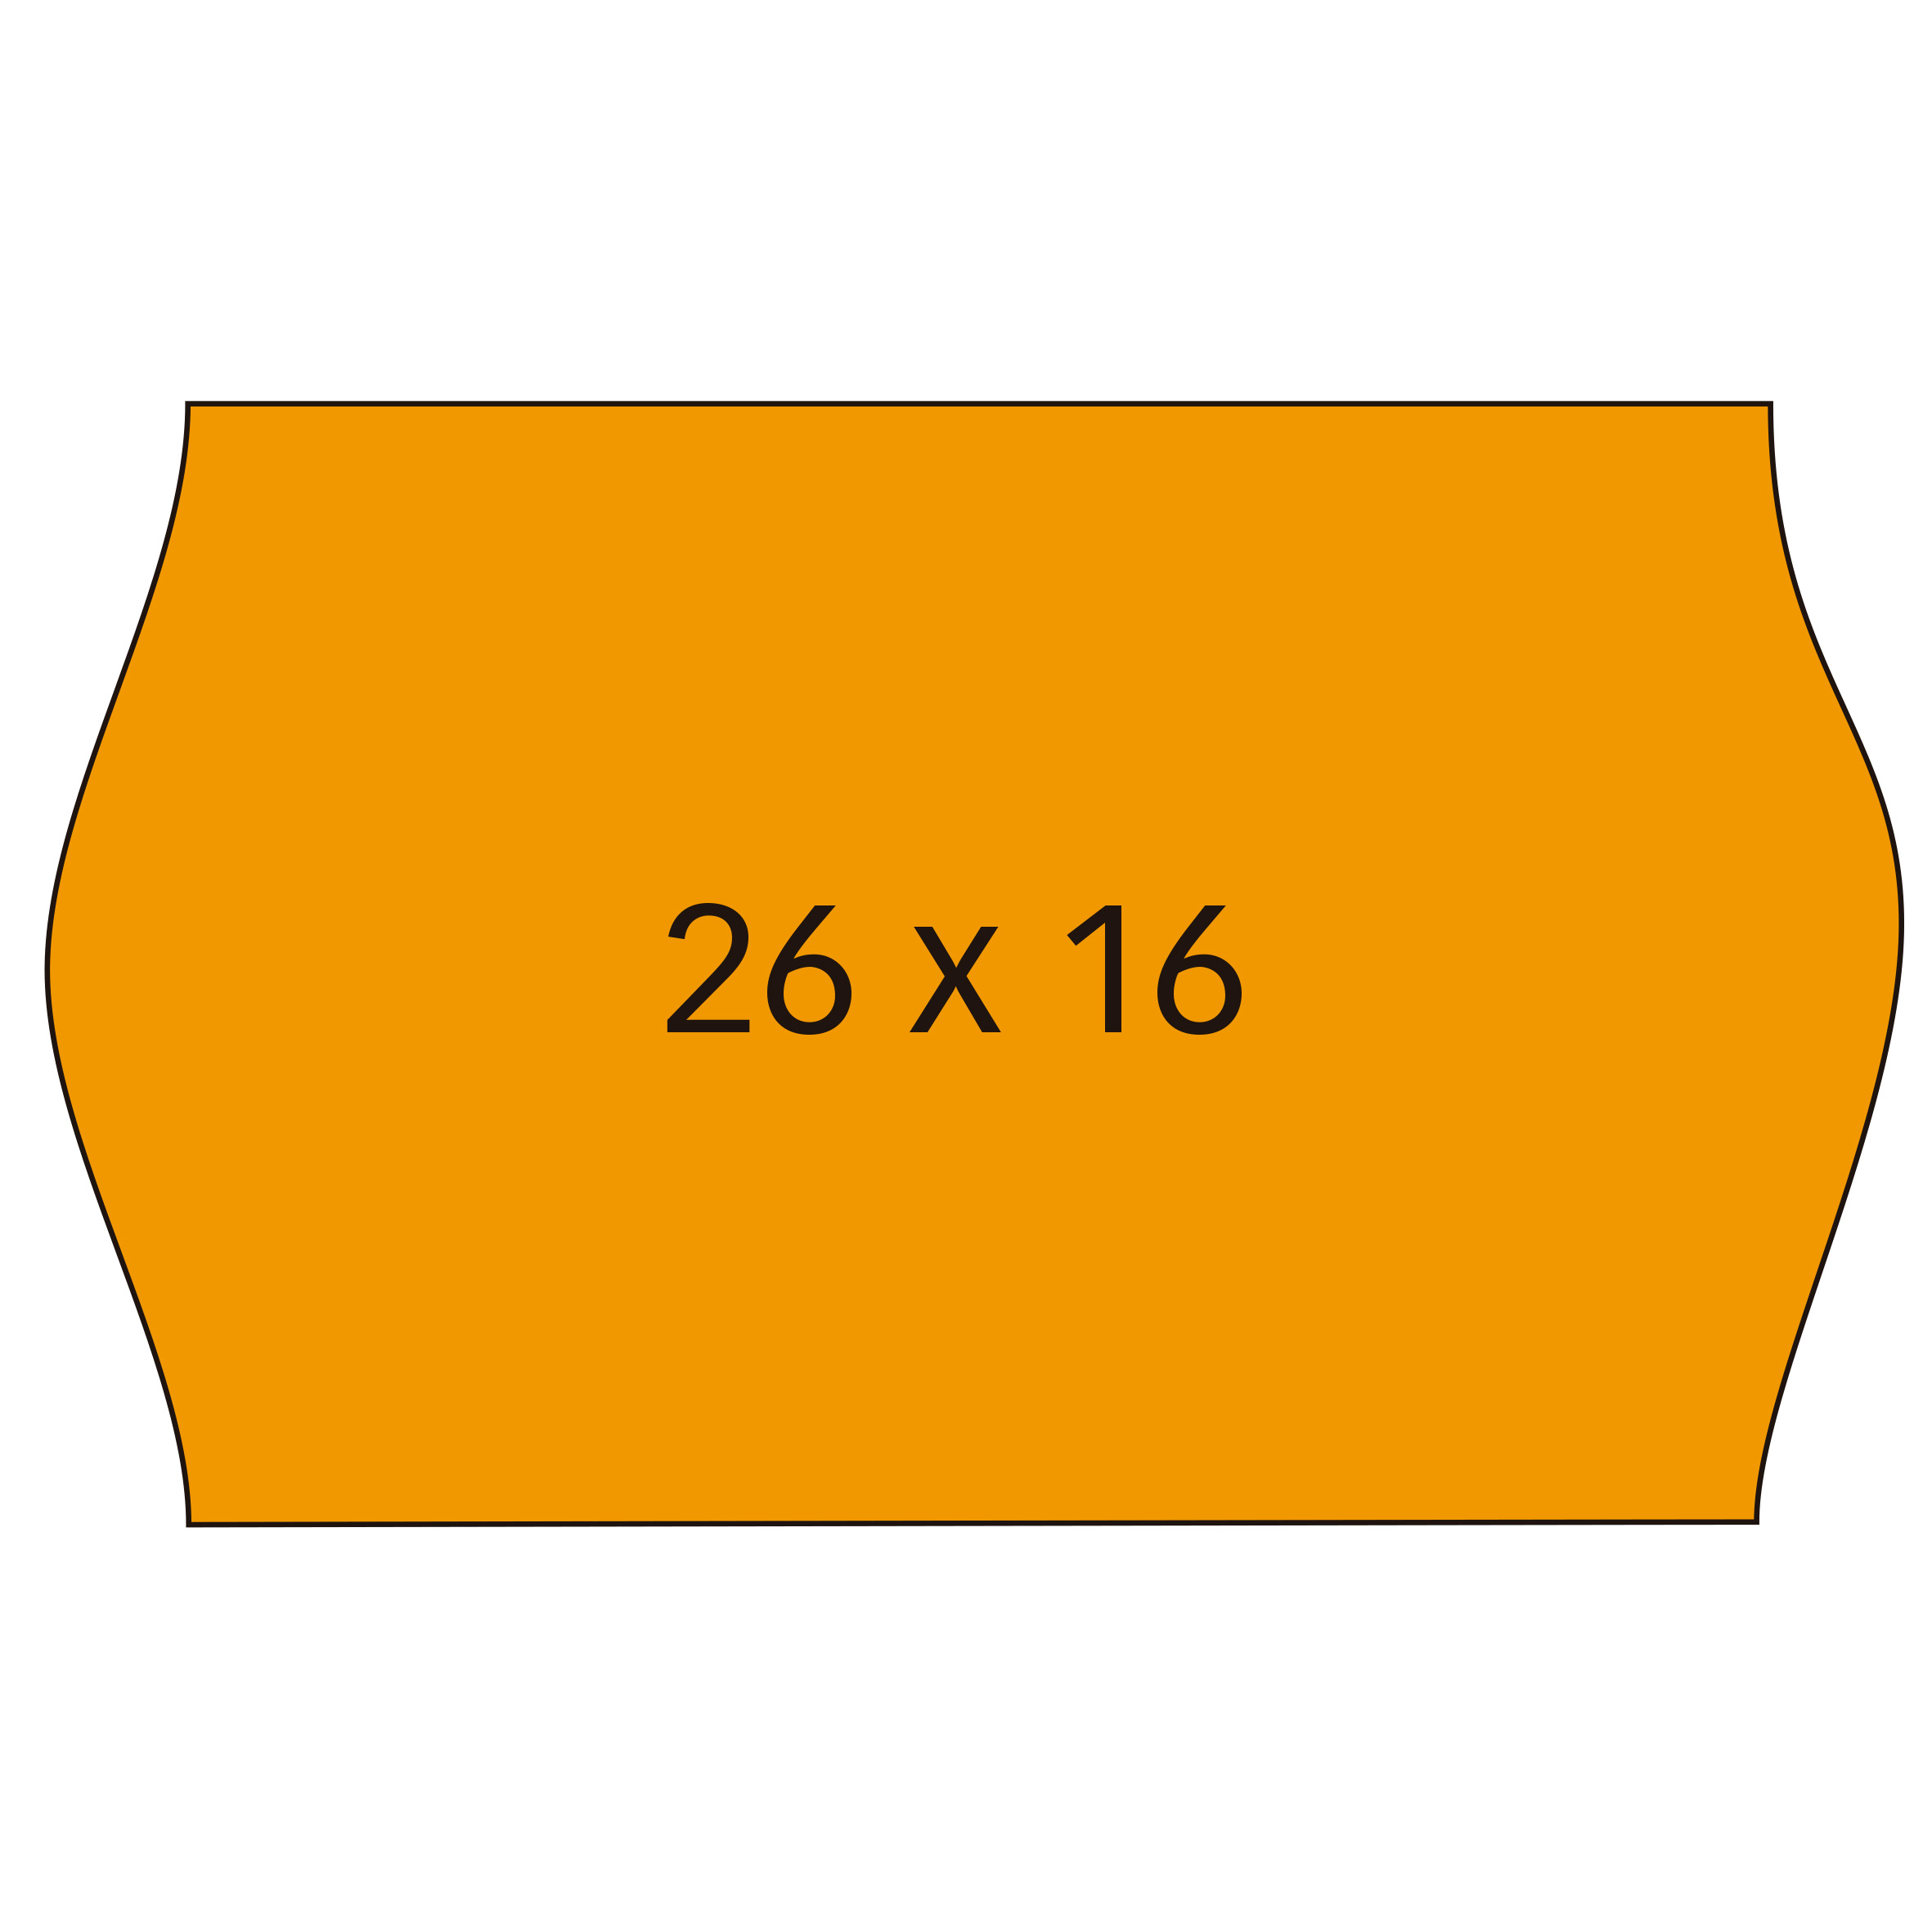 Apli Etiquetas Naranjas Removibles 26x16mm para Maquinas de Precios de 2 Lineas - Pack de 6 Rollos -